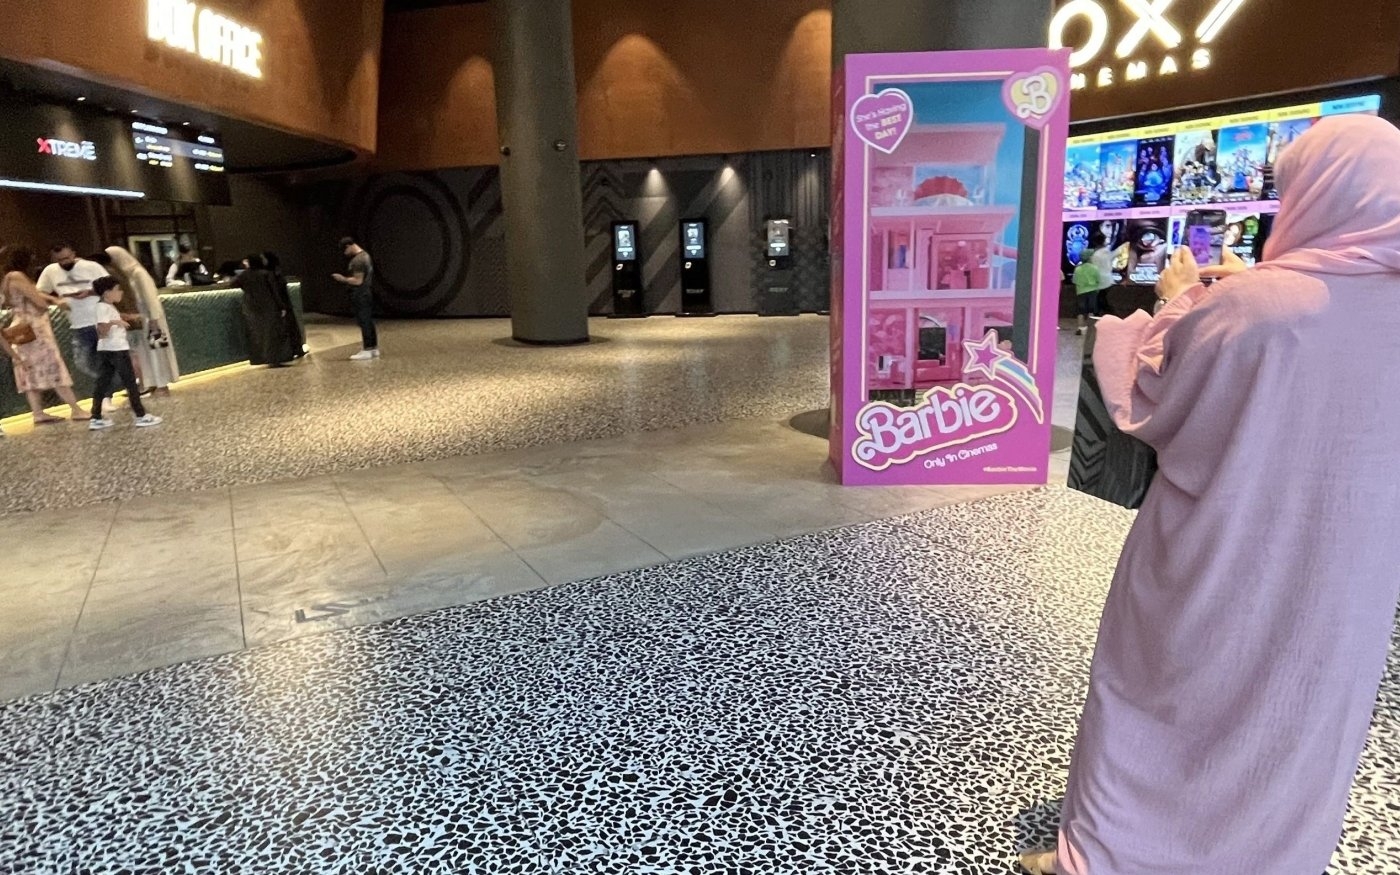 Matériel promotionnel pour Barbie dans un cinéma de Dubaï (AFP/Giuseppe Cacace)